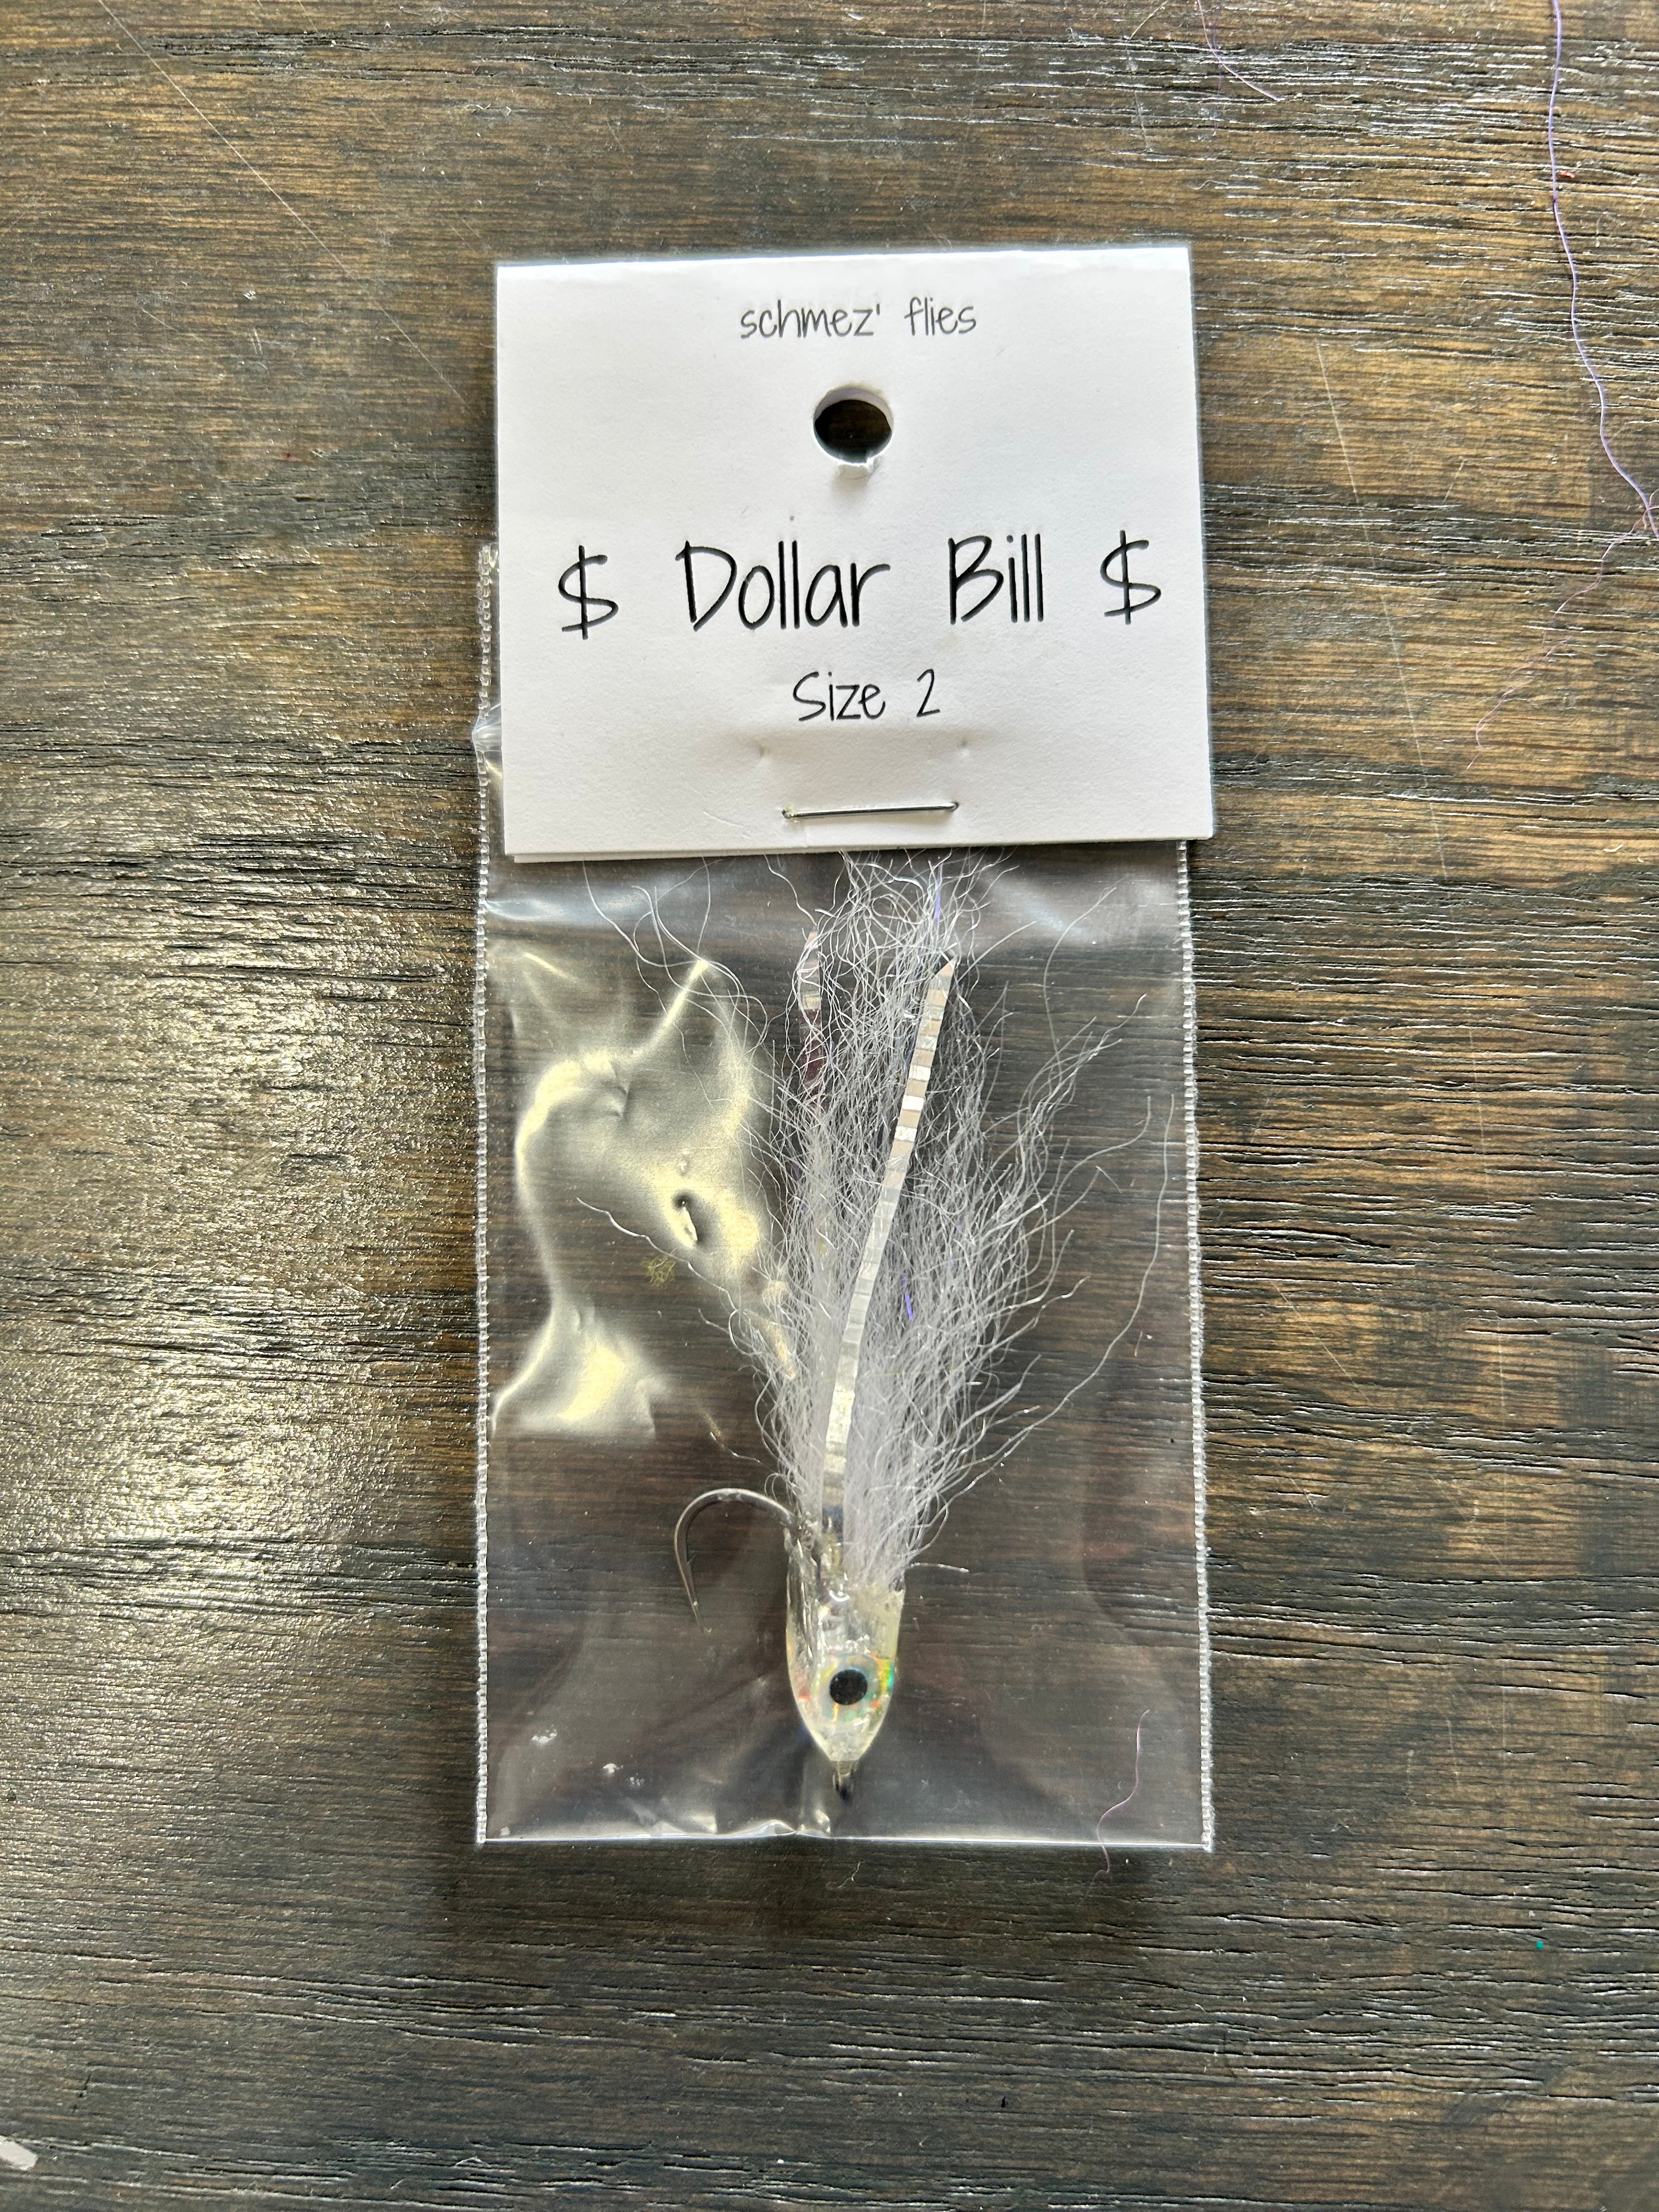 Schmez's dollar bill